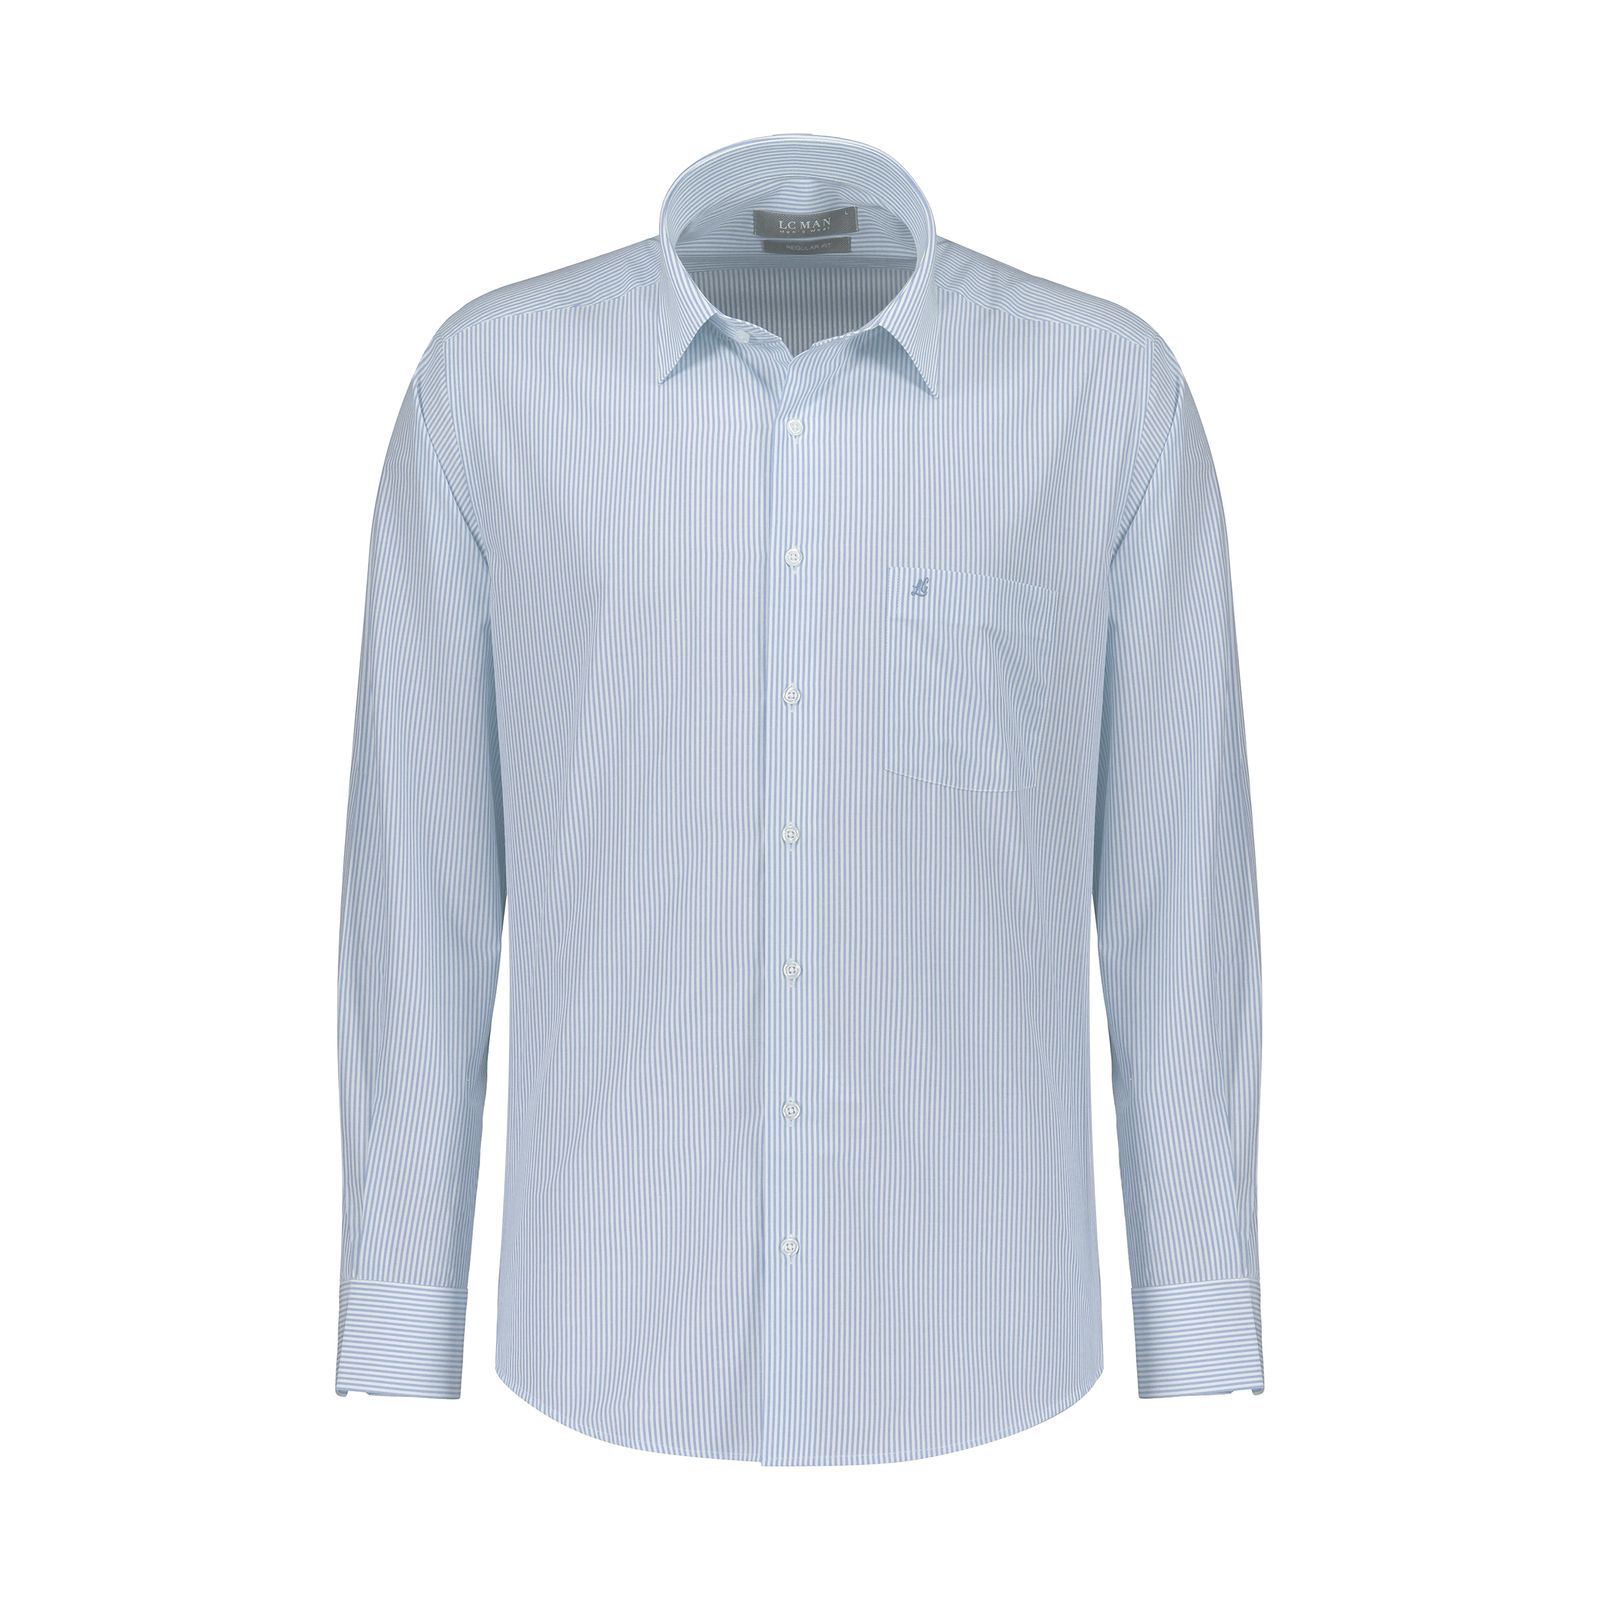 پیراهن آستین بلند مردانه ال سی من مدل 02181290-blue 175 -  - 1